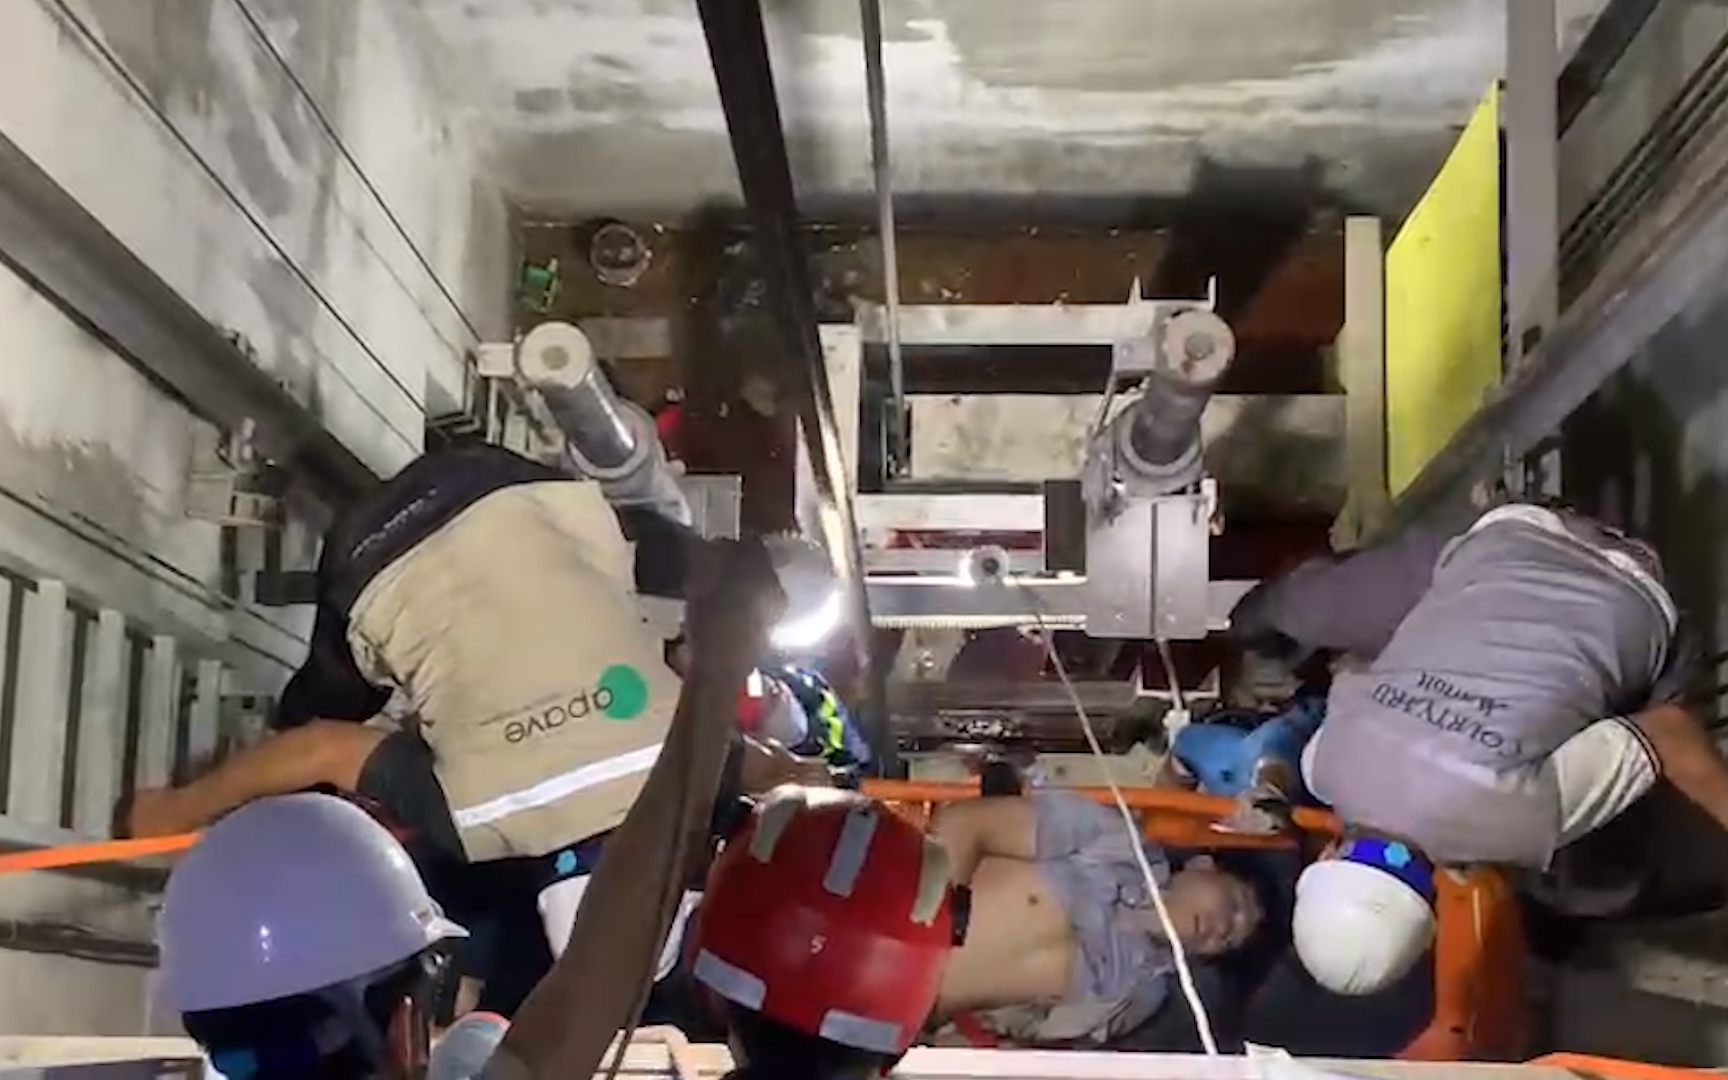 Dọn công trình trước bão số 4, nam công nhân rơi xuống hầm sâu gần 7m